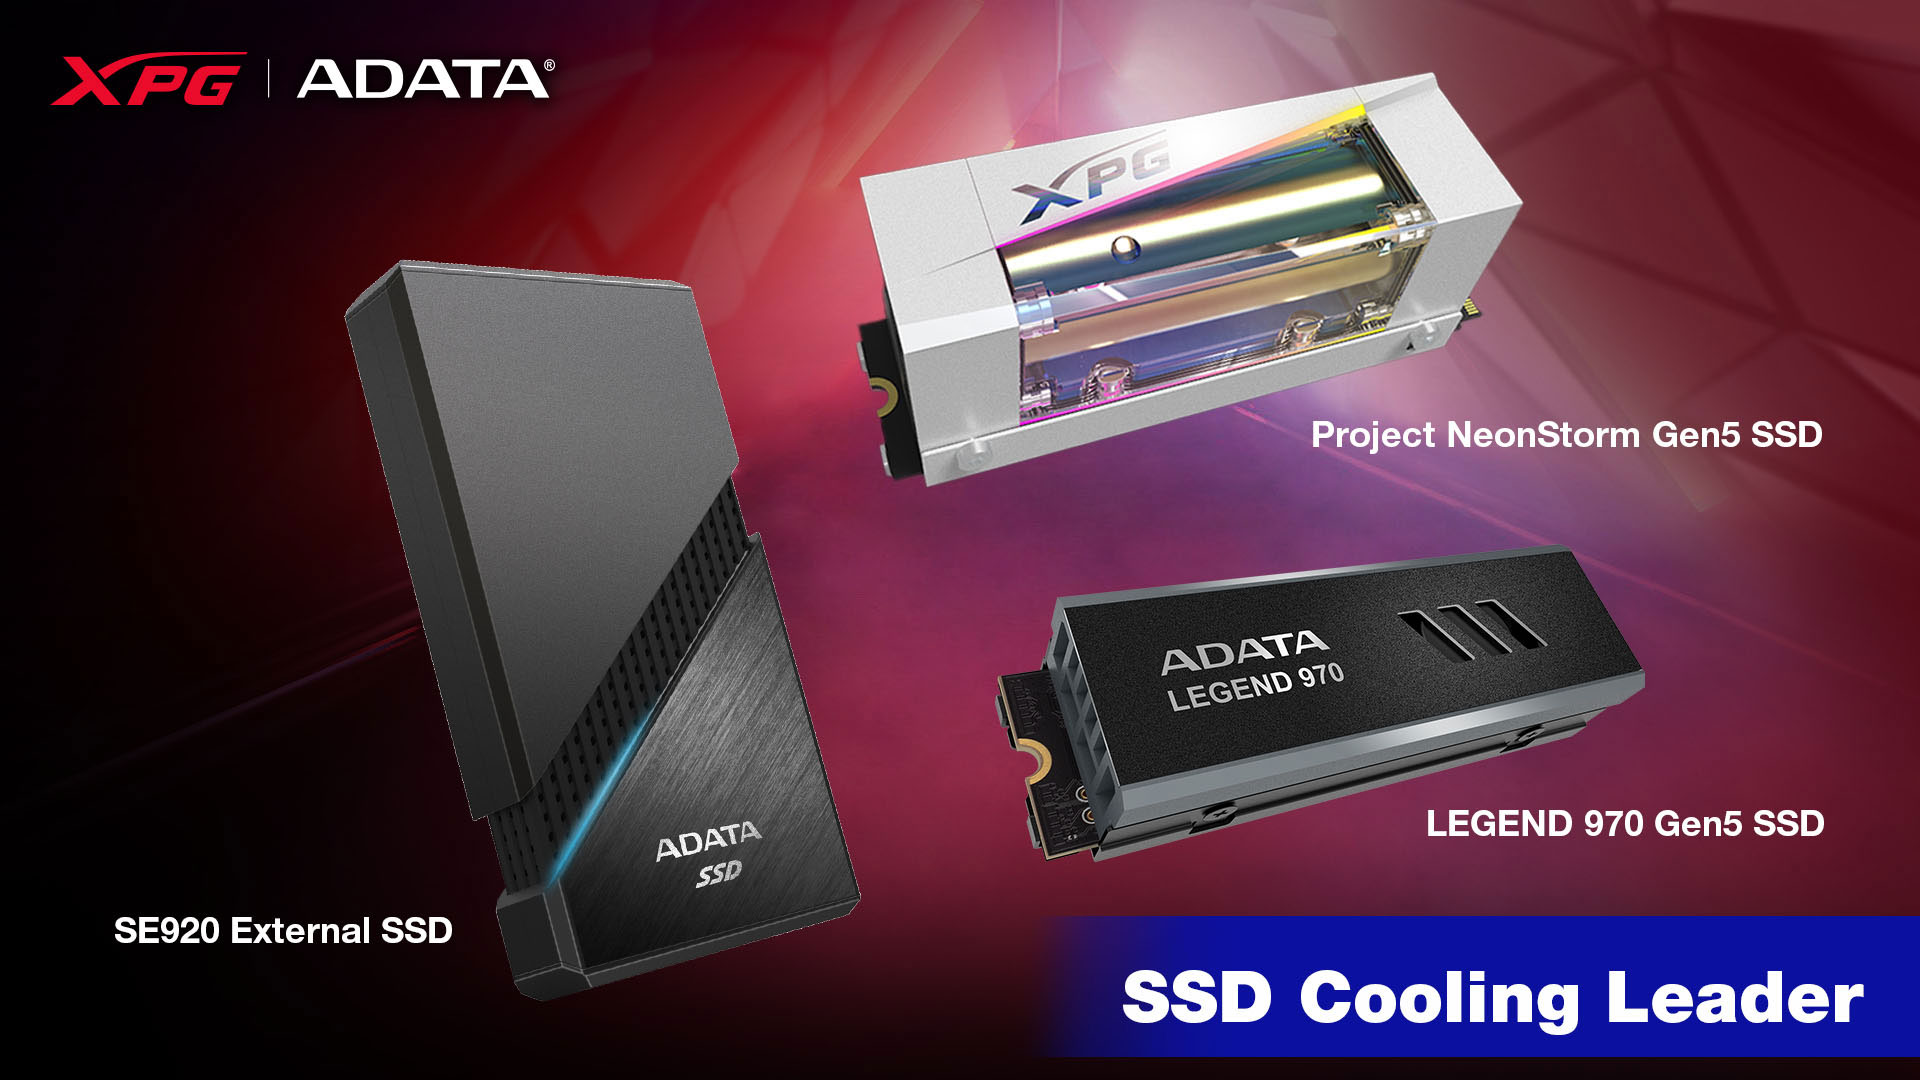 Adata PCIe Gen5 SSDs